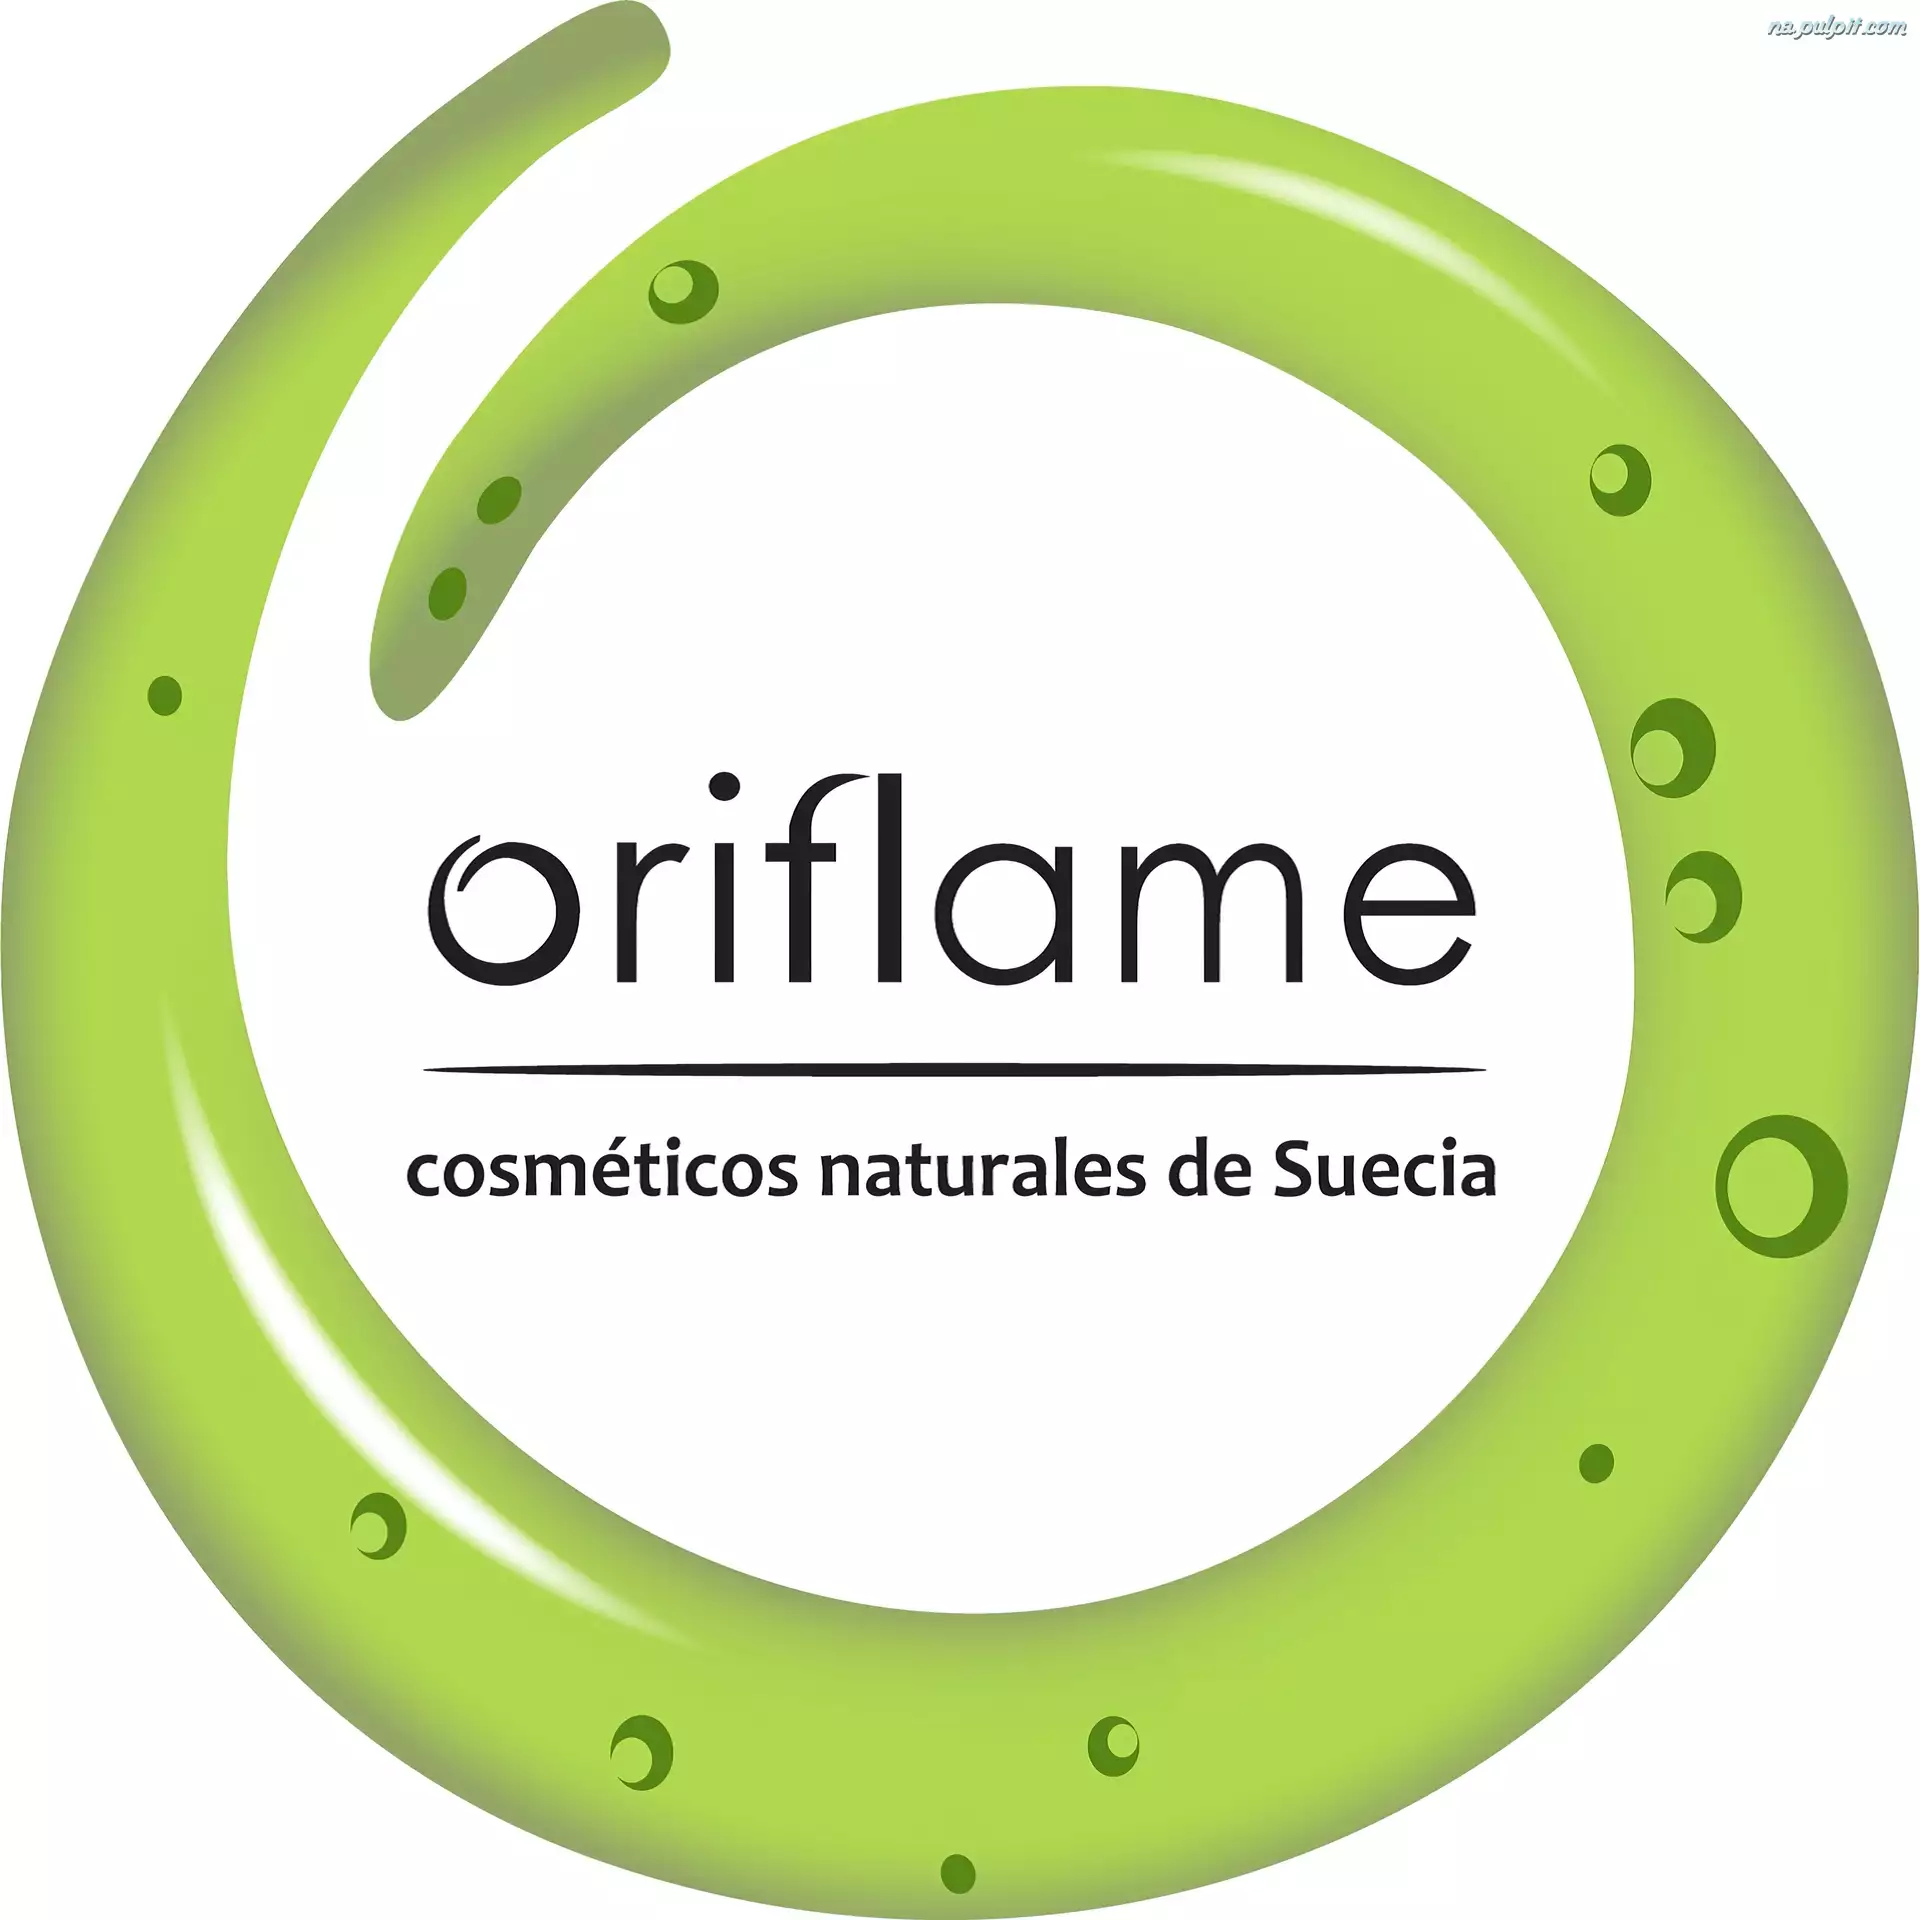 Oriflame, Logo